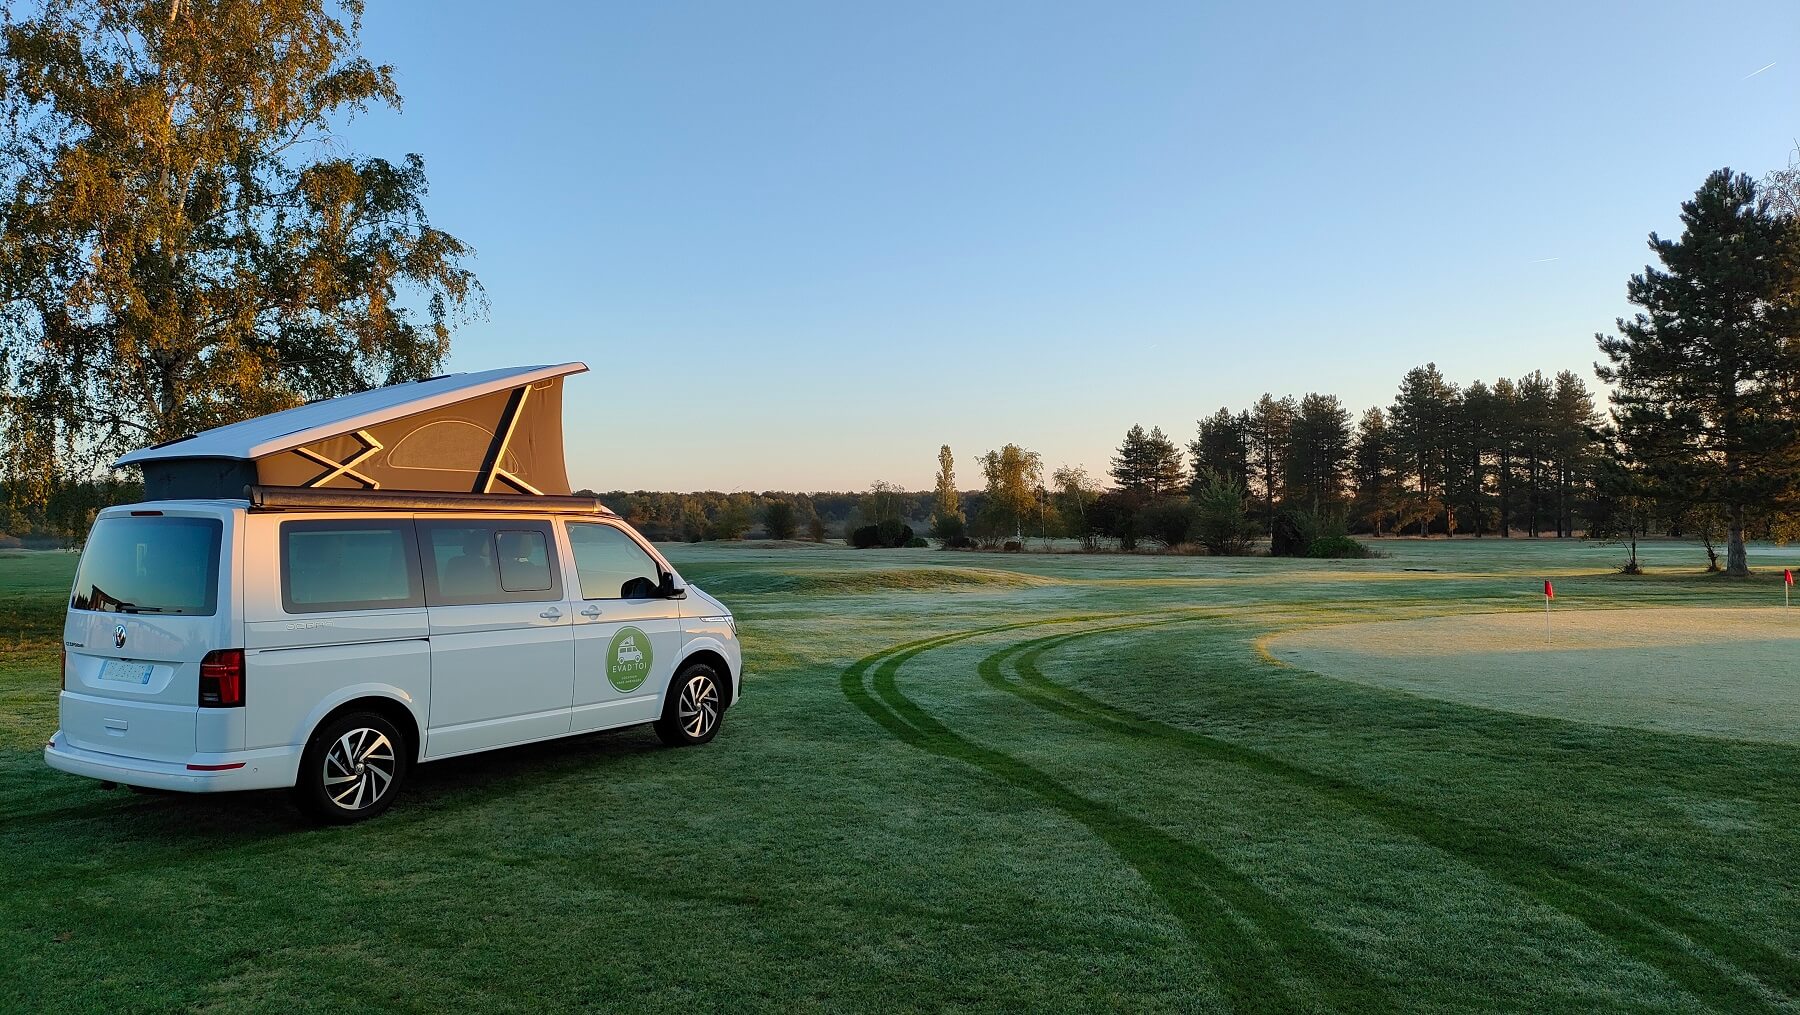 Location Van VW California EVAD'TOI sur un green de golf au levé du soleil avec rosée